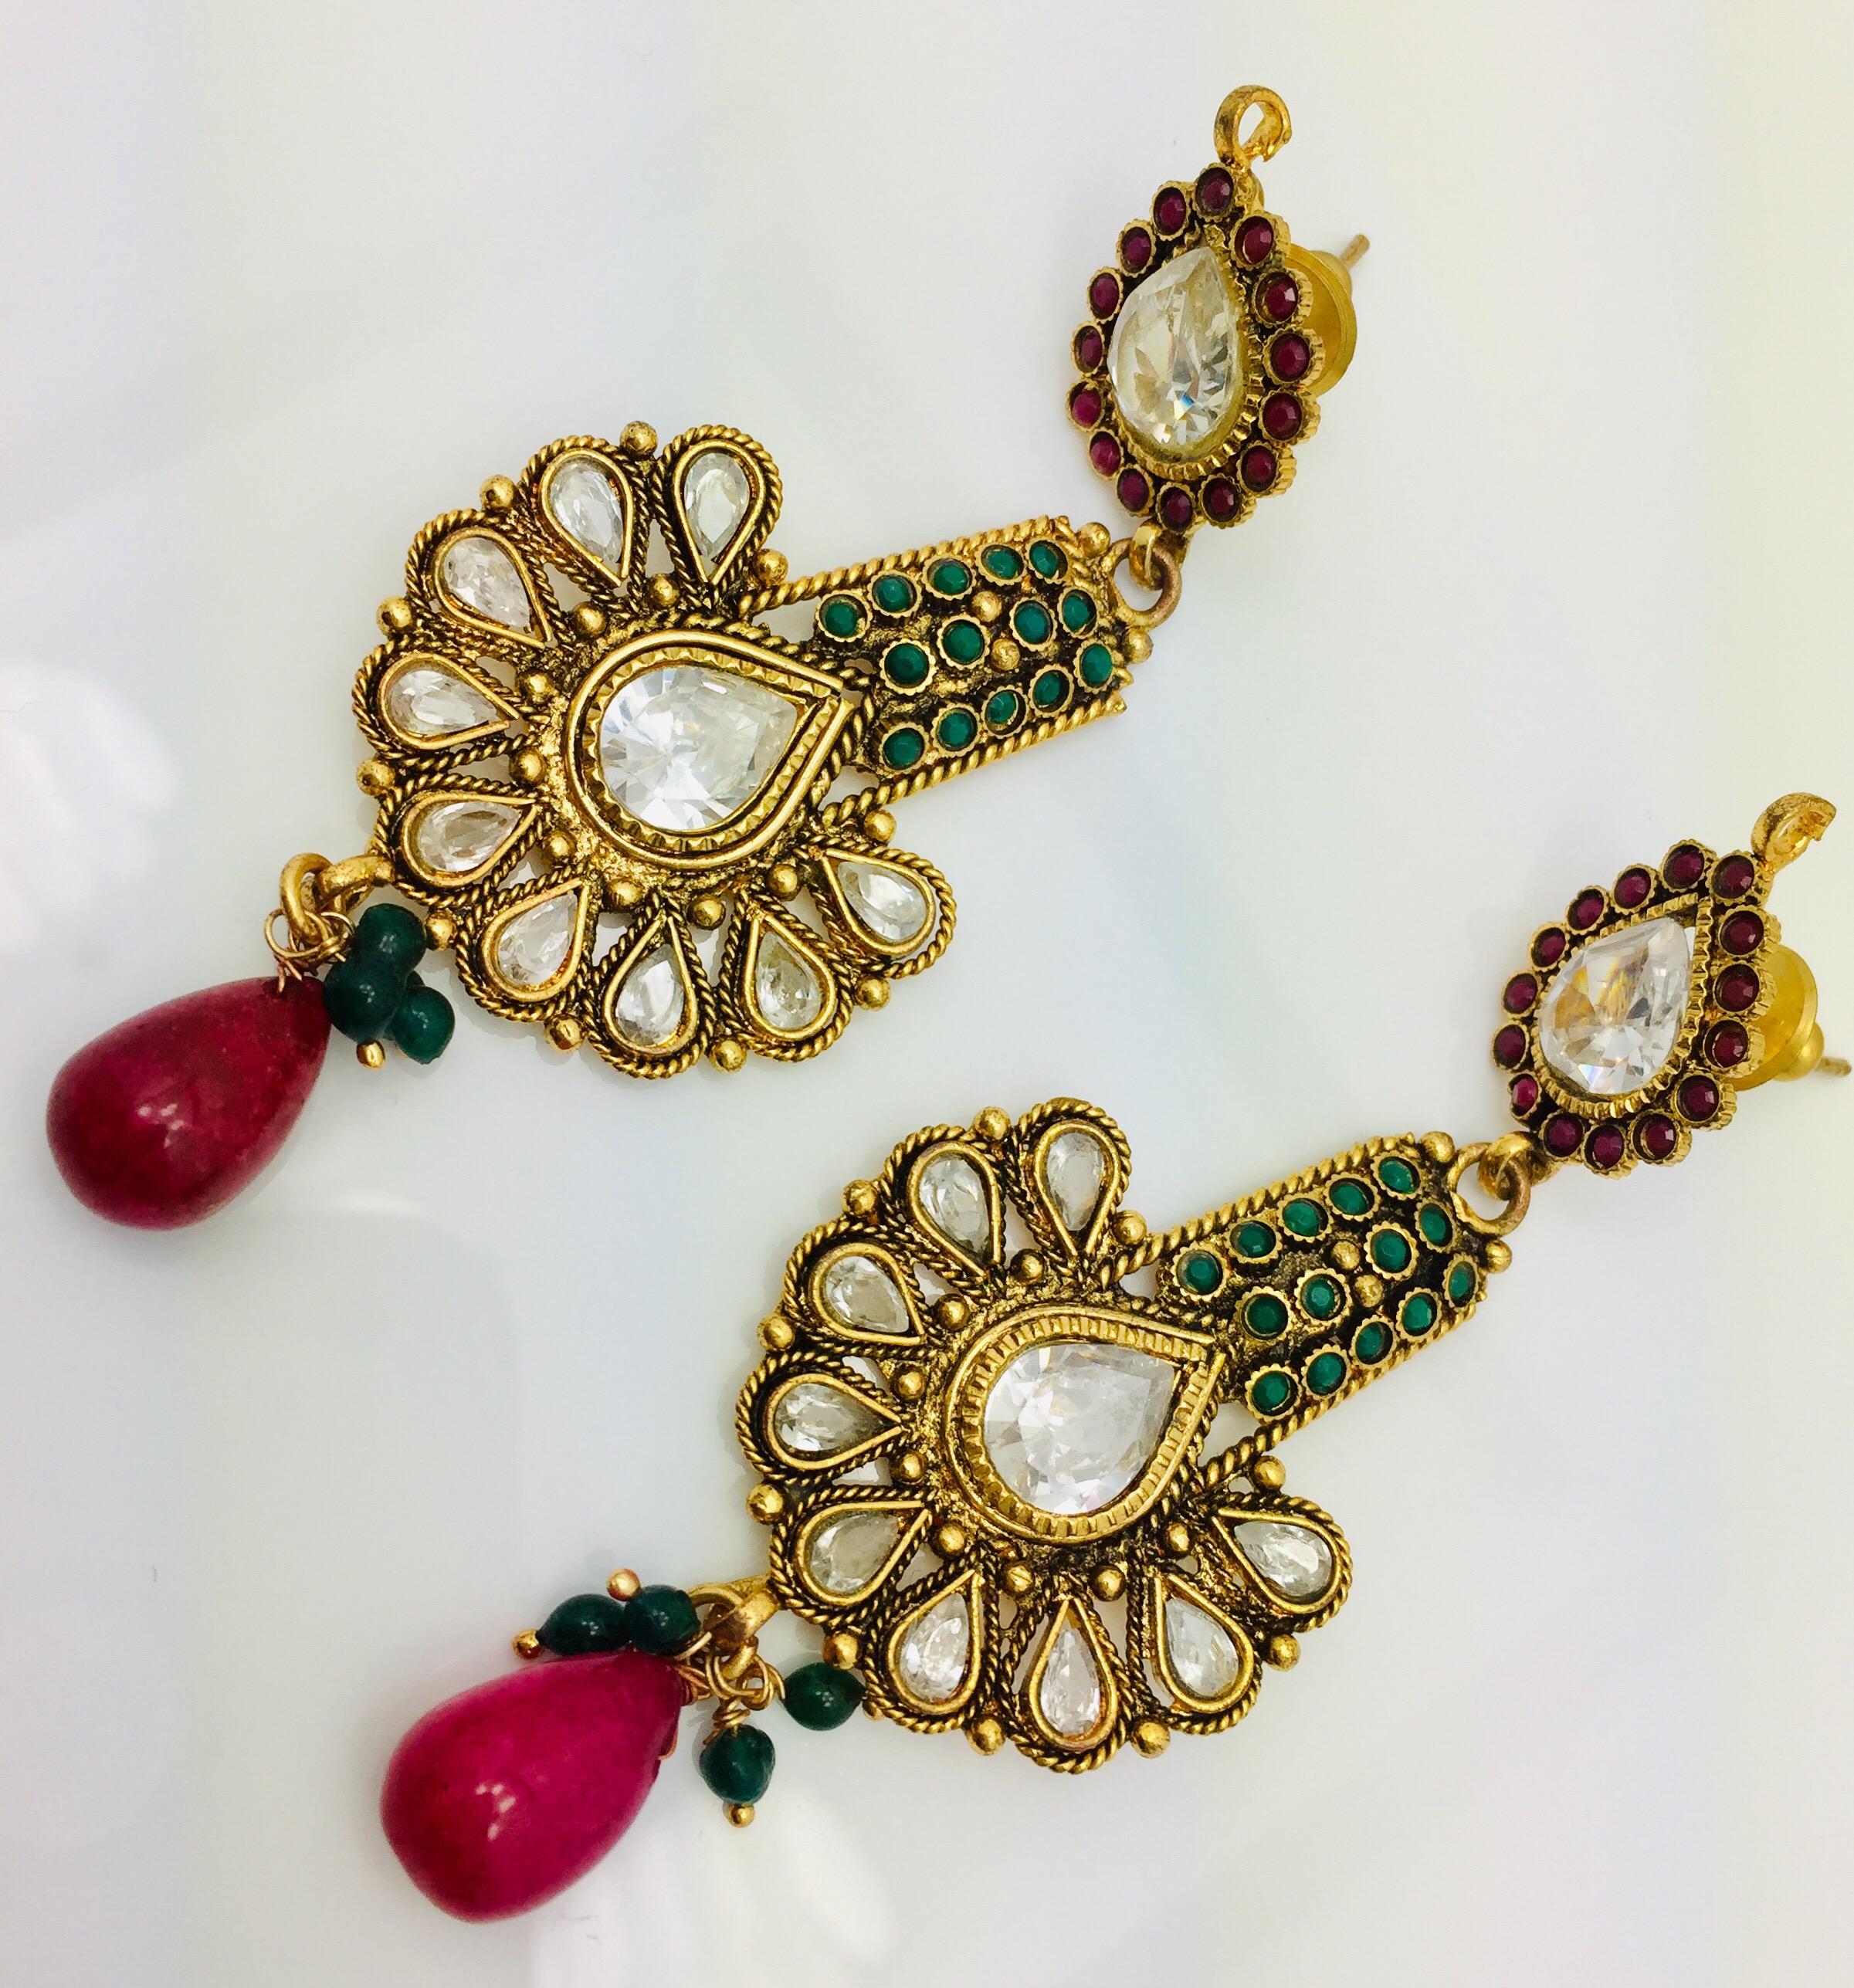 green ruby earrings